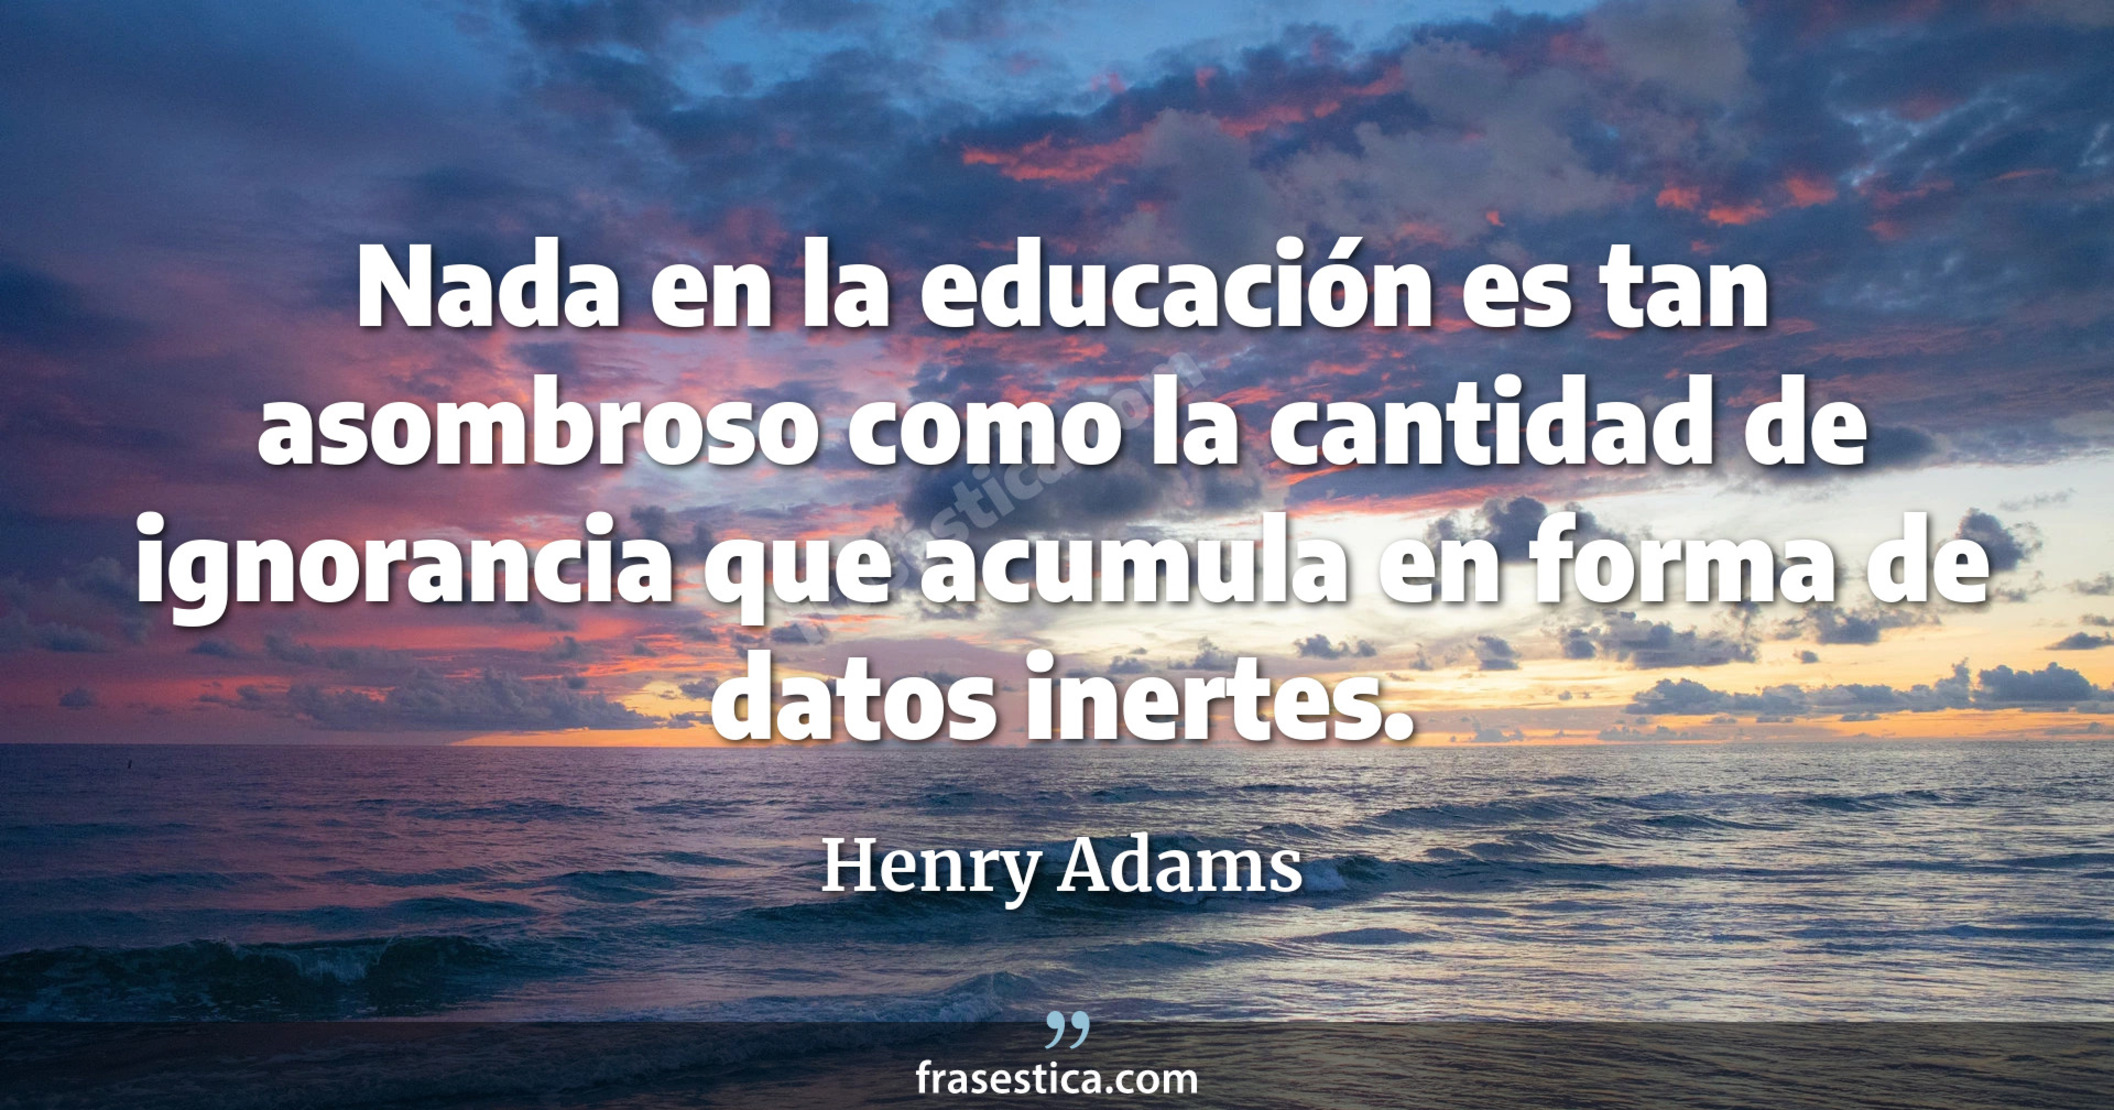 Nada en la educación es tan asombroso como la cantidad de ignorancia que acumula en forma de datos inertes. - Henry Adams